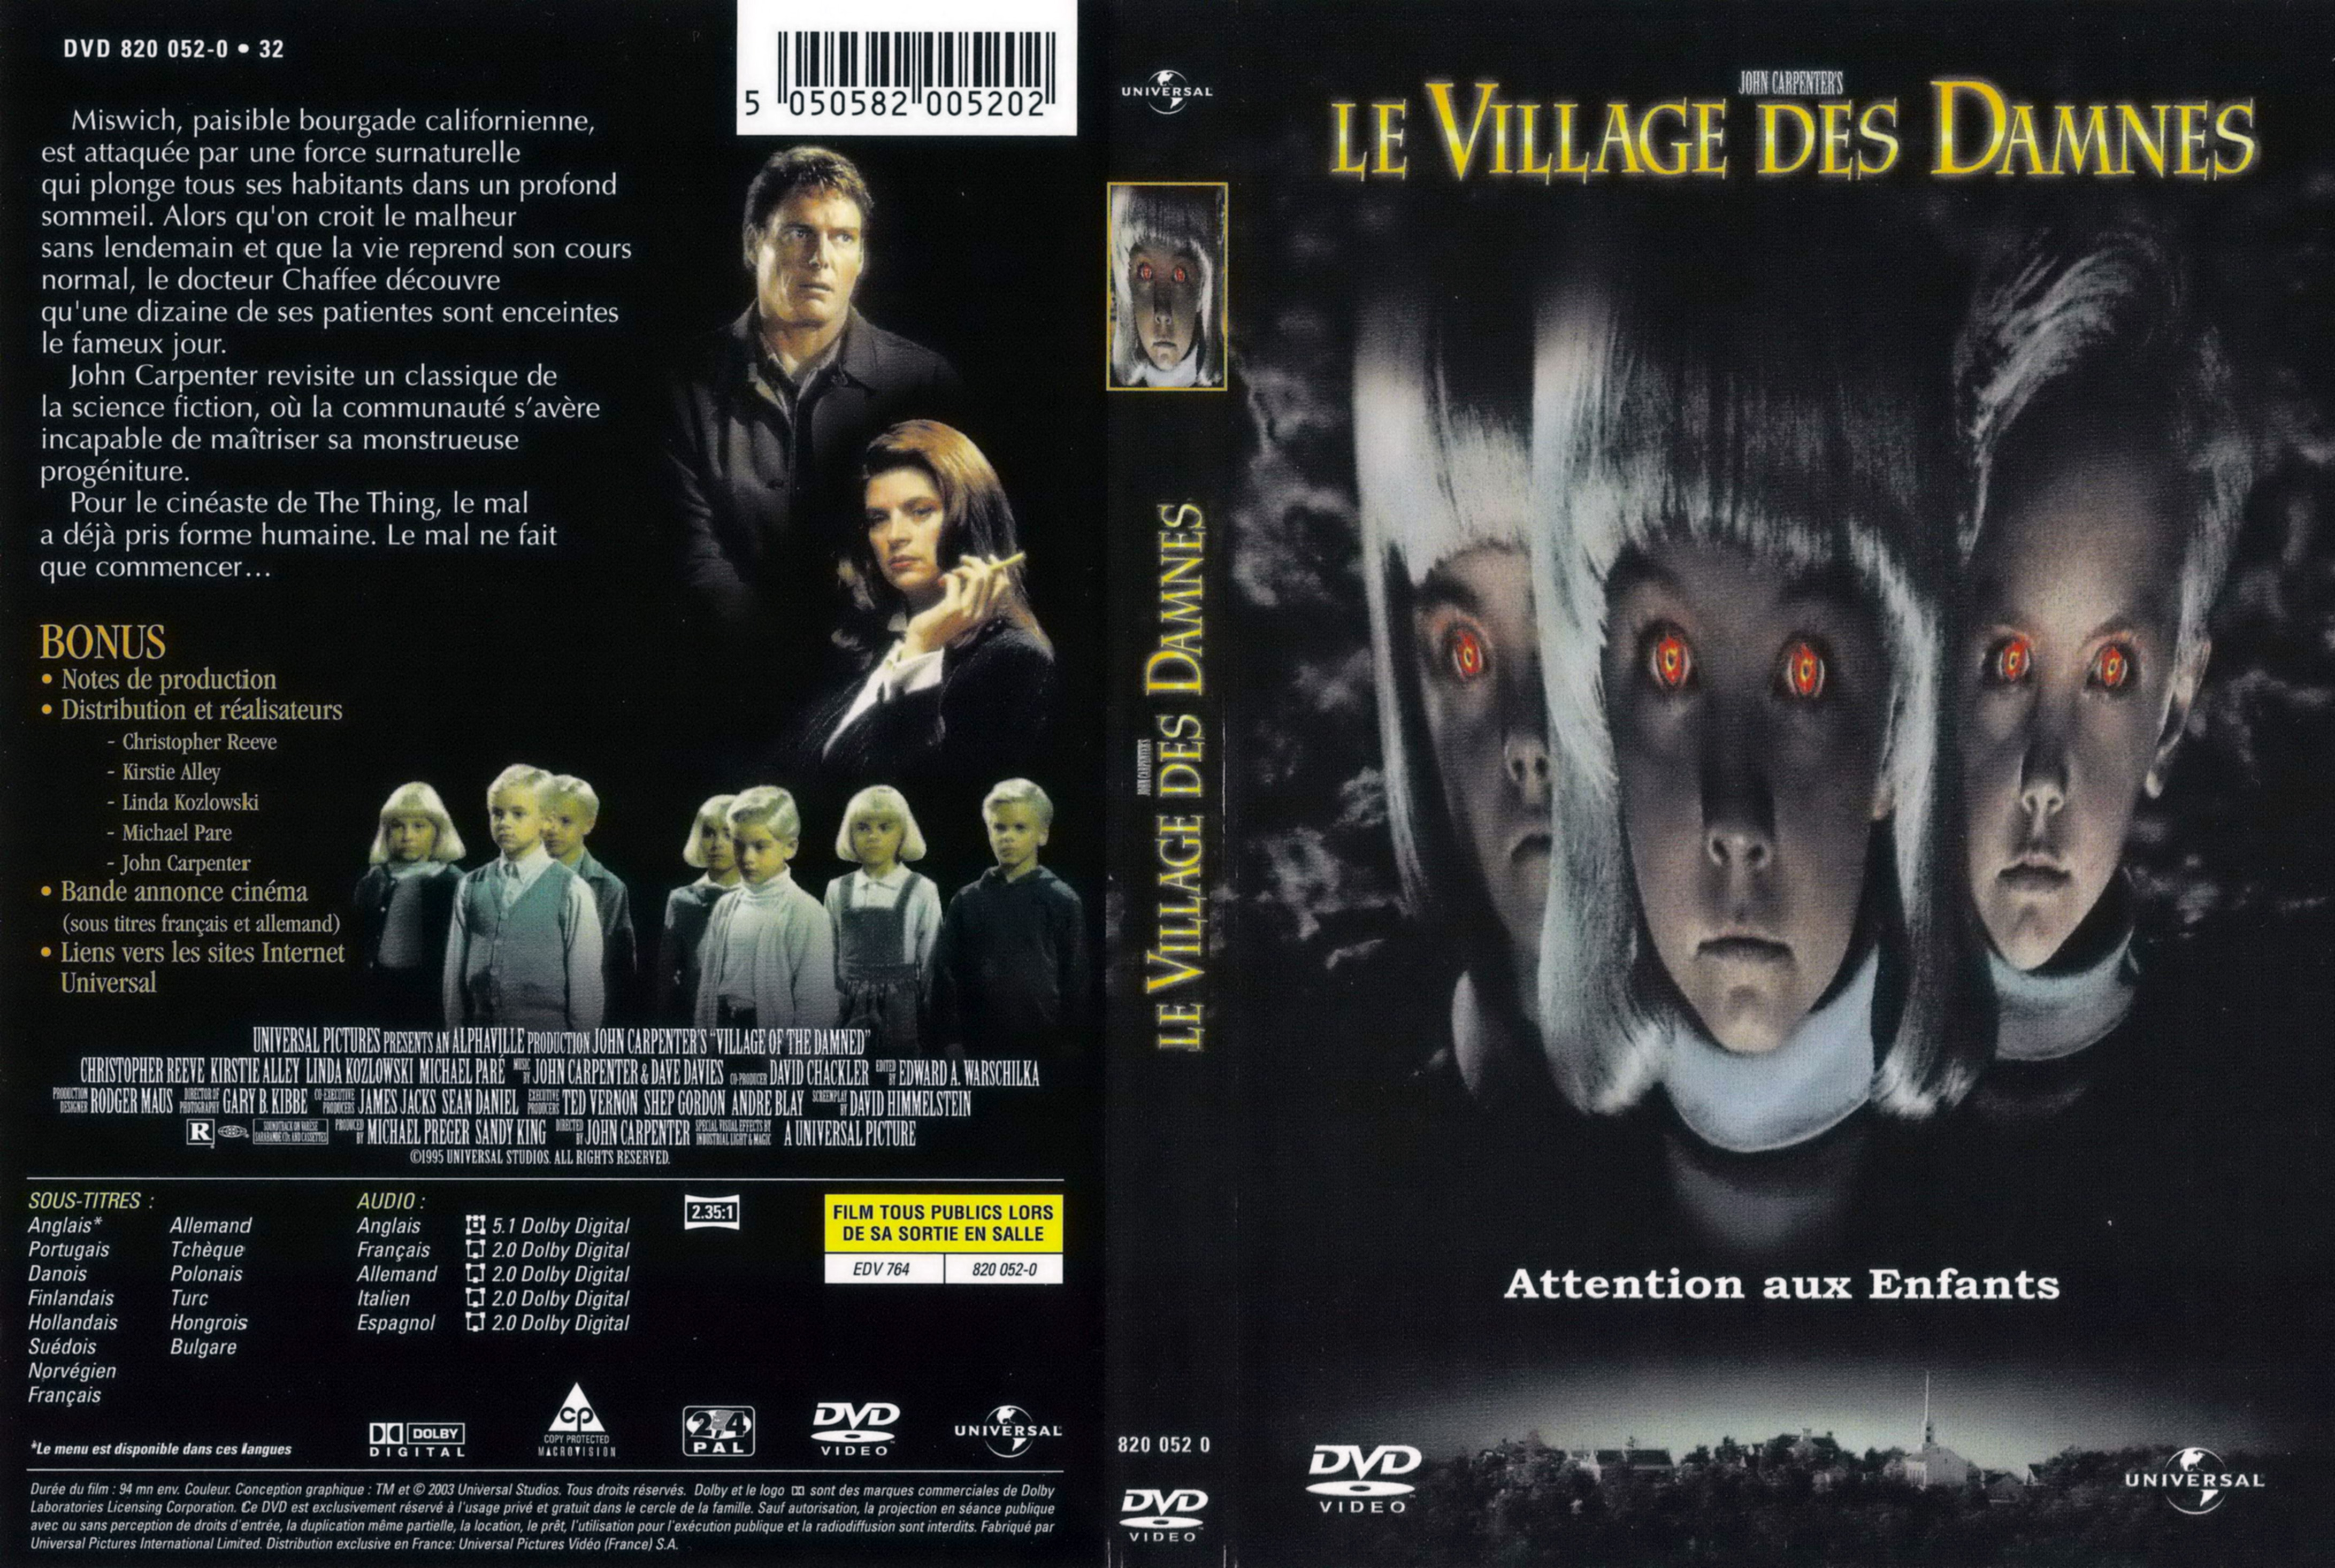 Jaquette DVD Le village des damns v4